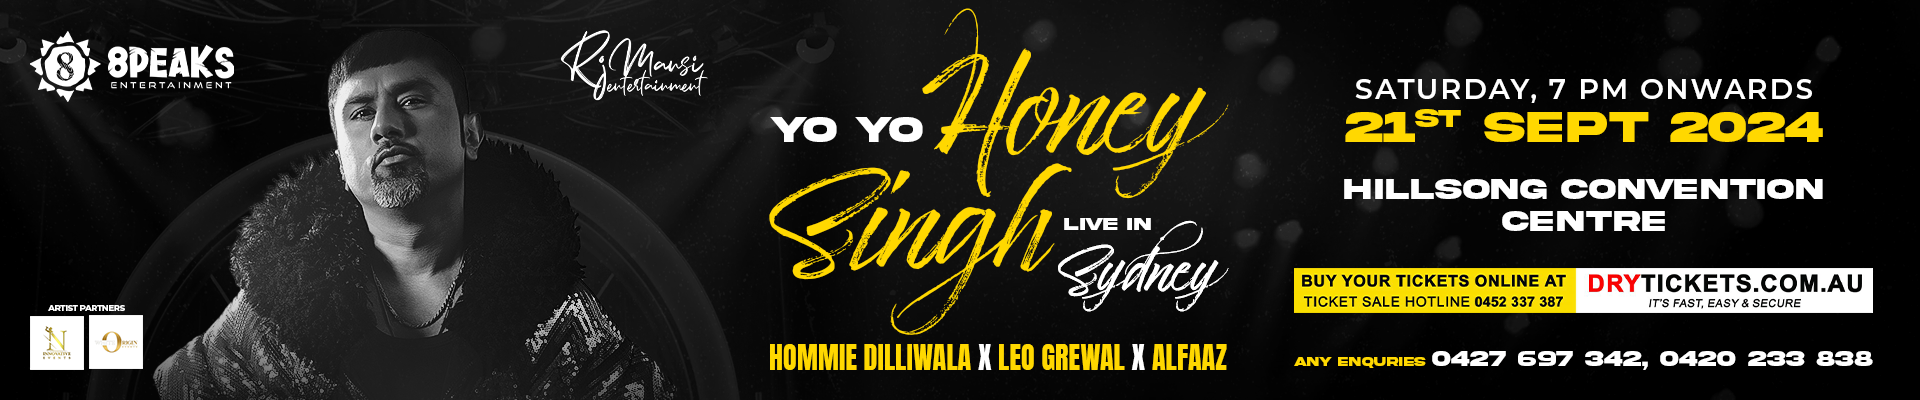 The Glory Tour - Yo Yo Honey Singh Live In Sydney 2024